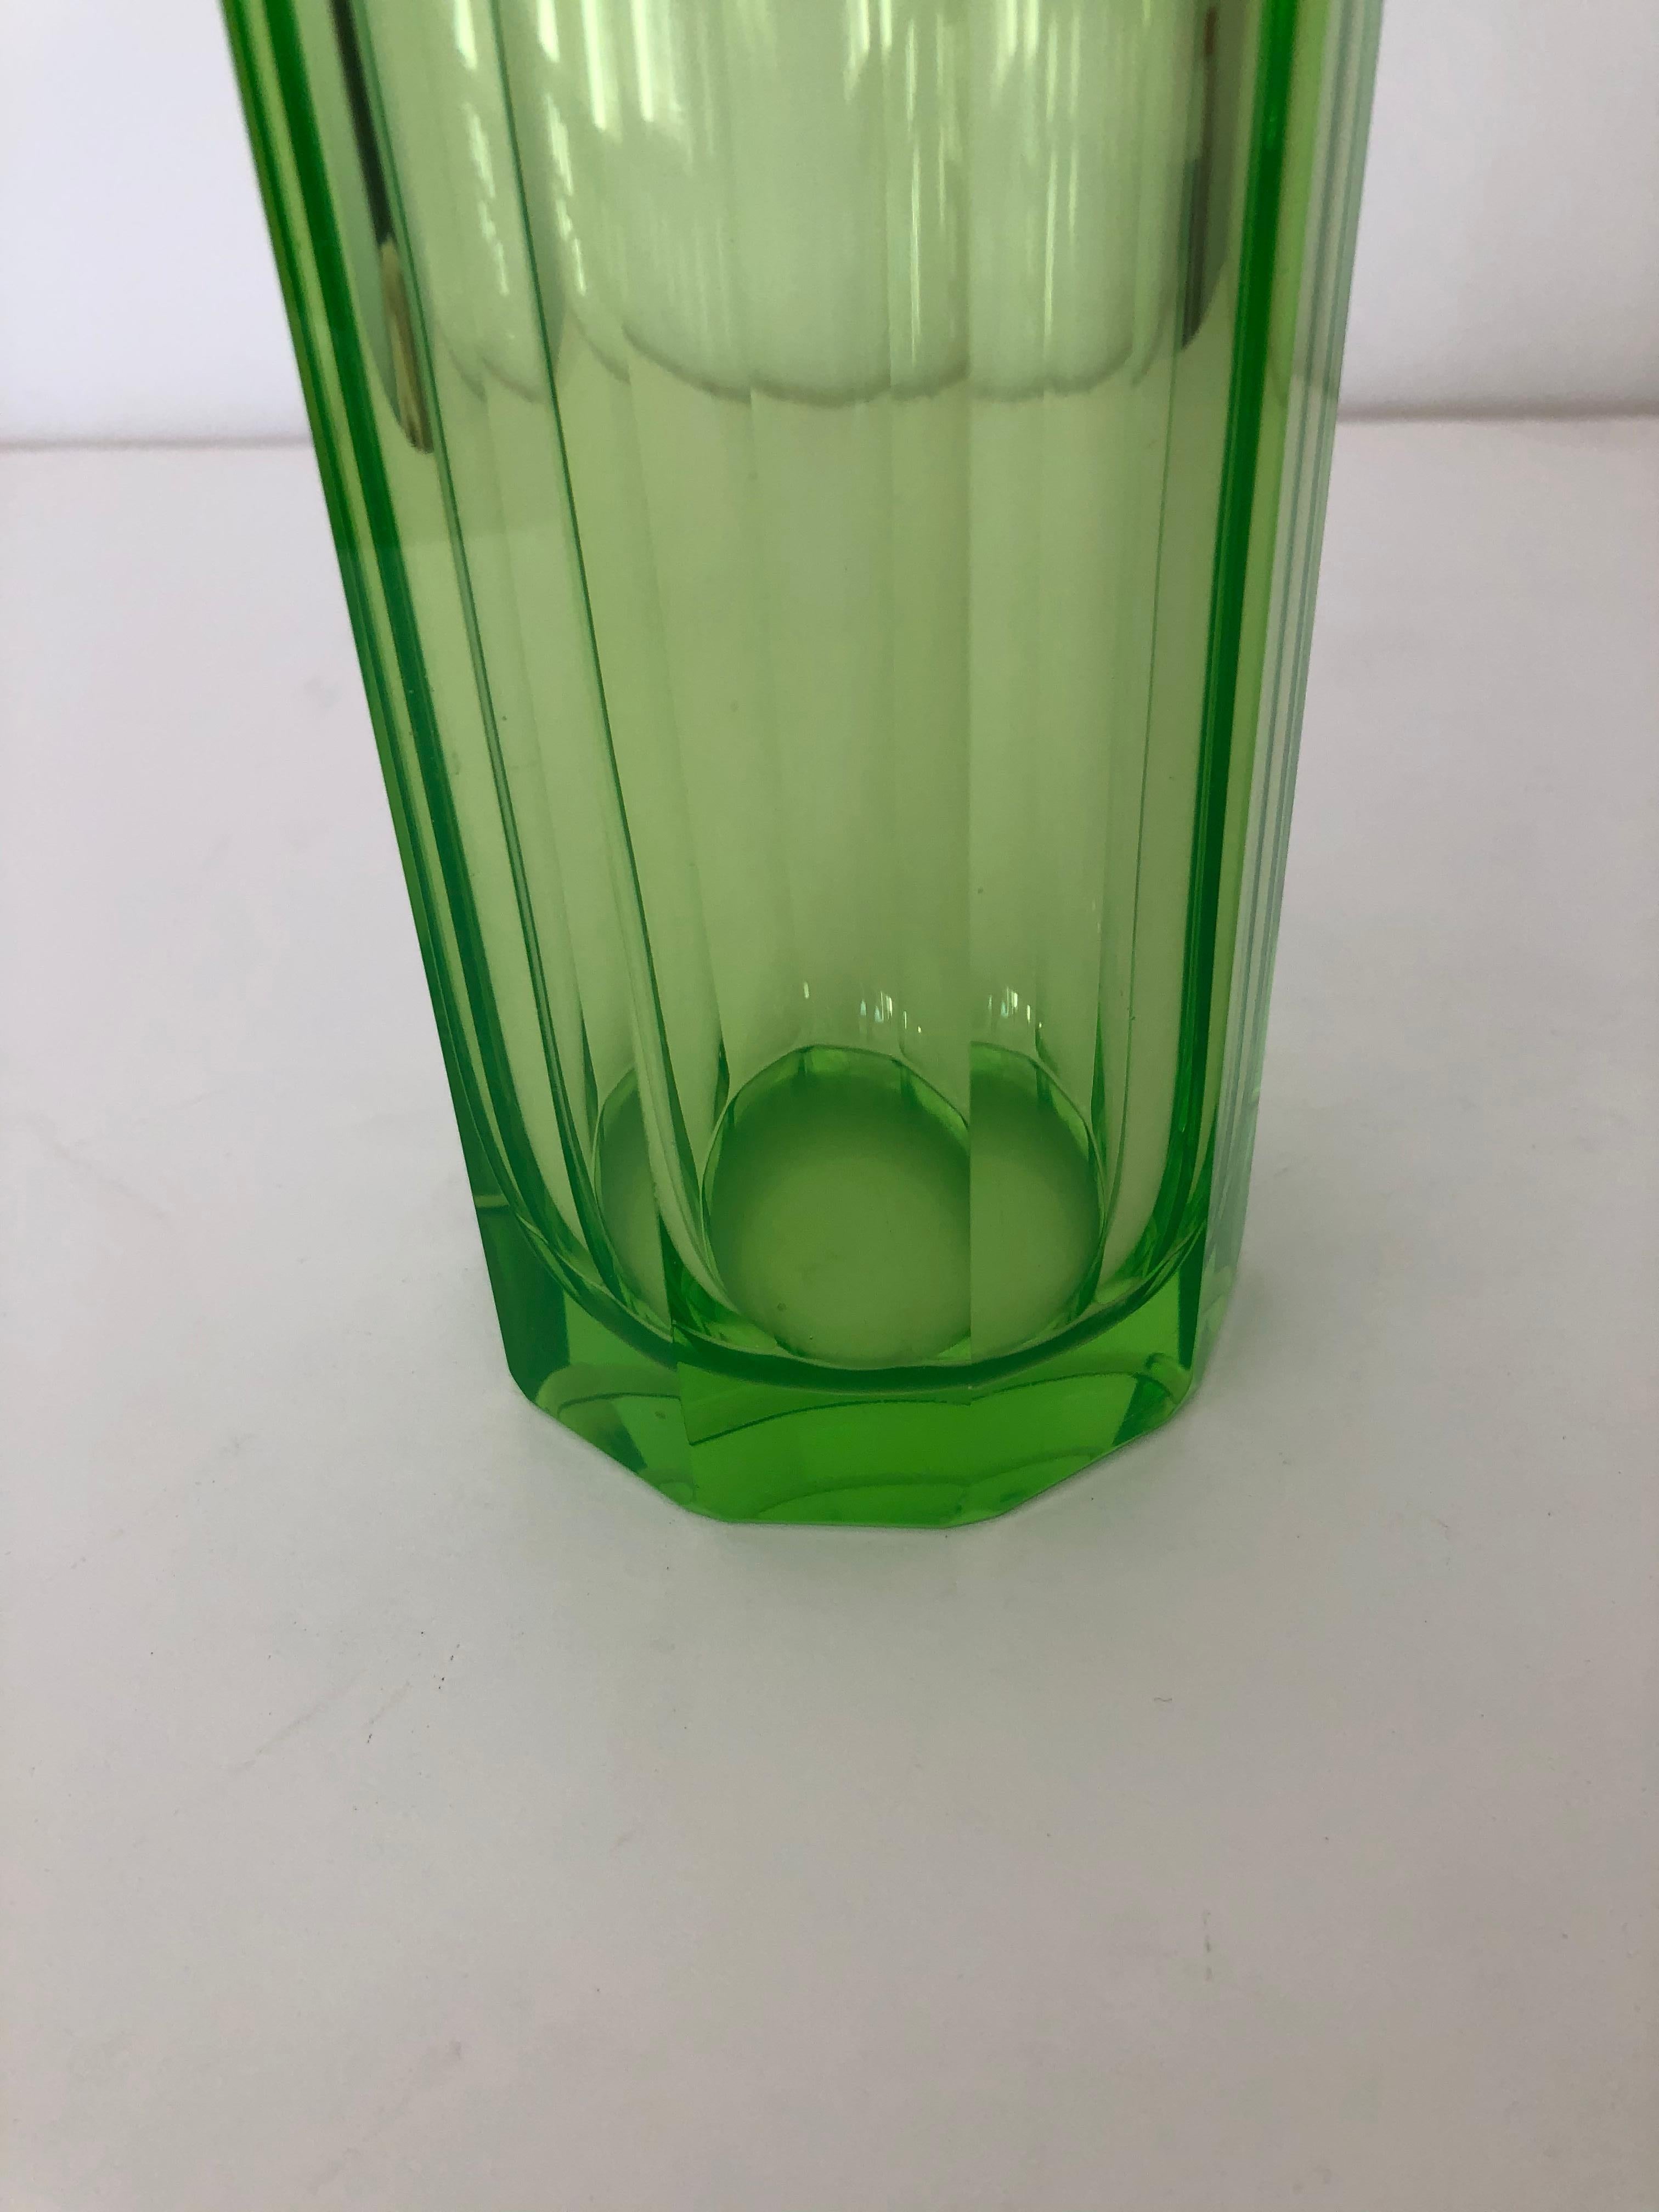 Polished Art Deco Tall Slender Vaseline Glass Decanter / Cologne Bottle For Sale